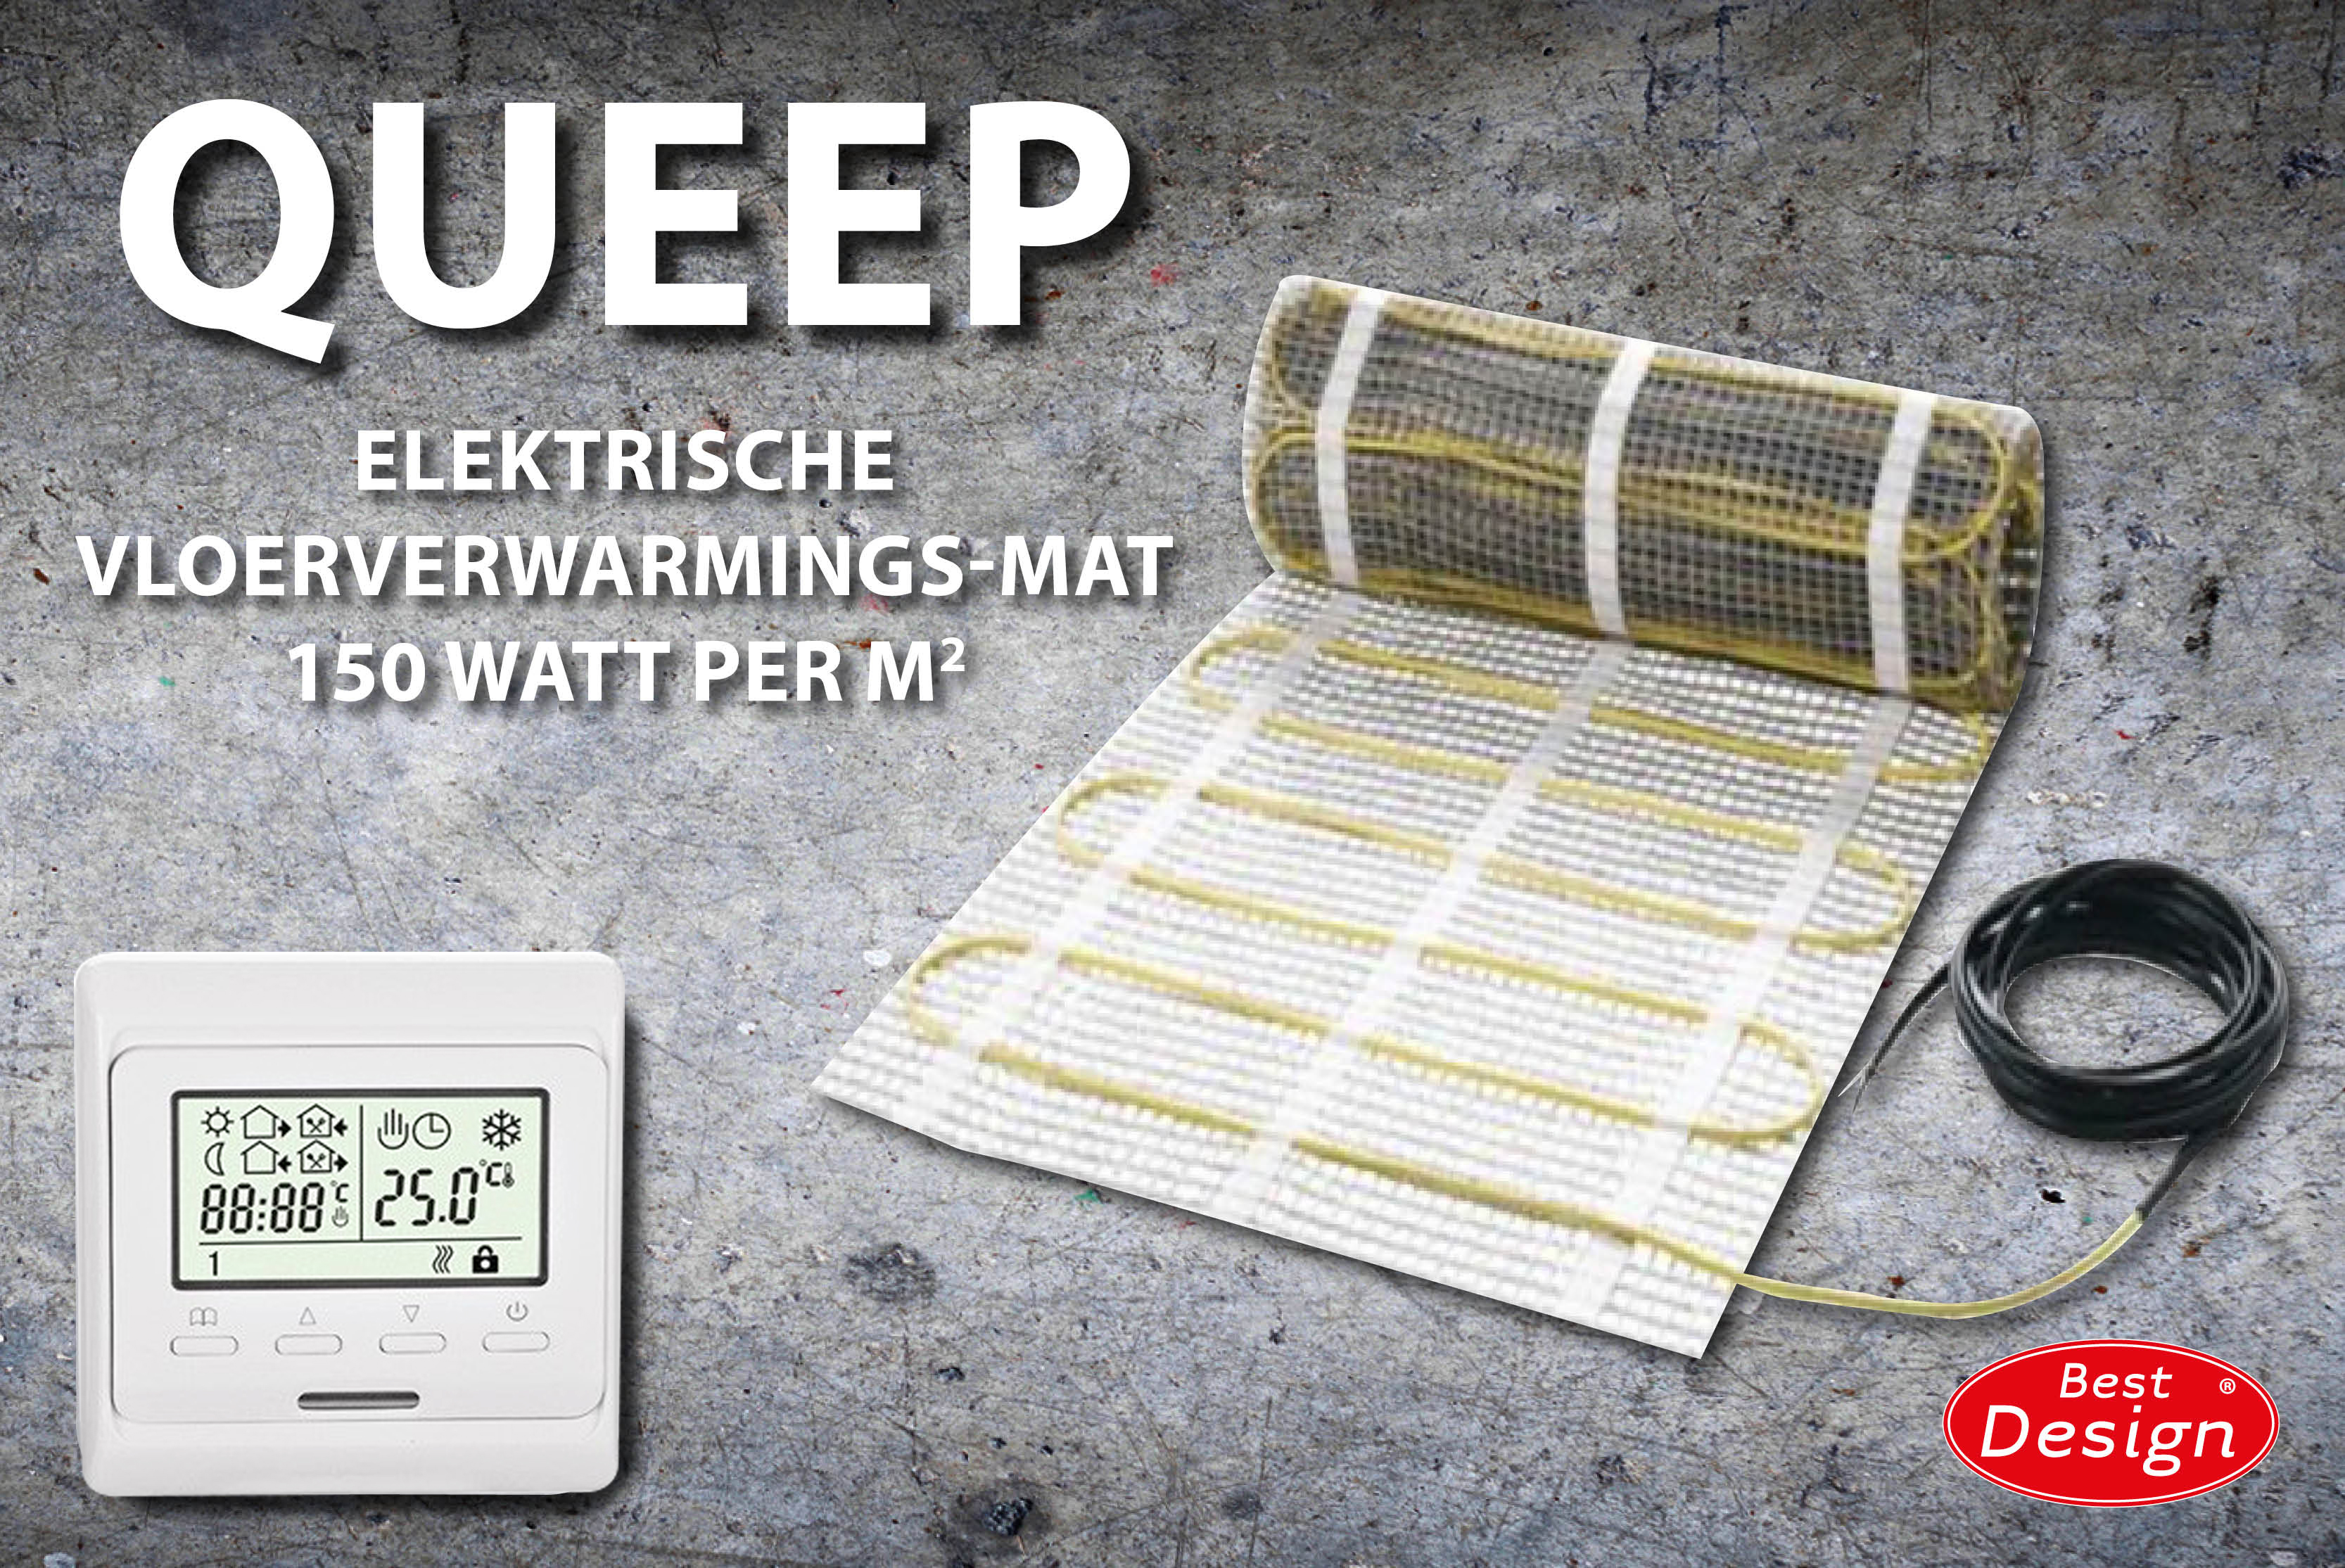 Best-Design Queep elektrische vloerverwarmings-mat 15.0 m2 Top Merken Winkel